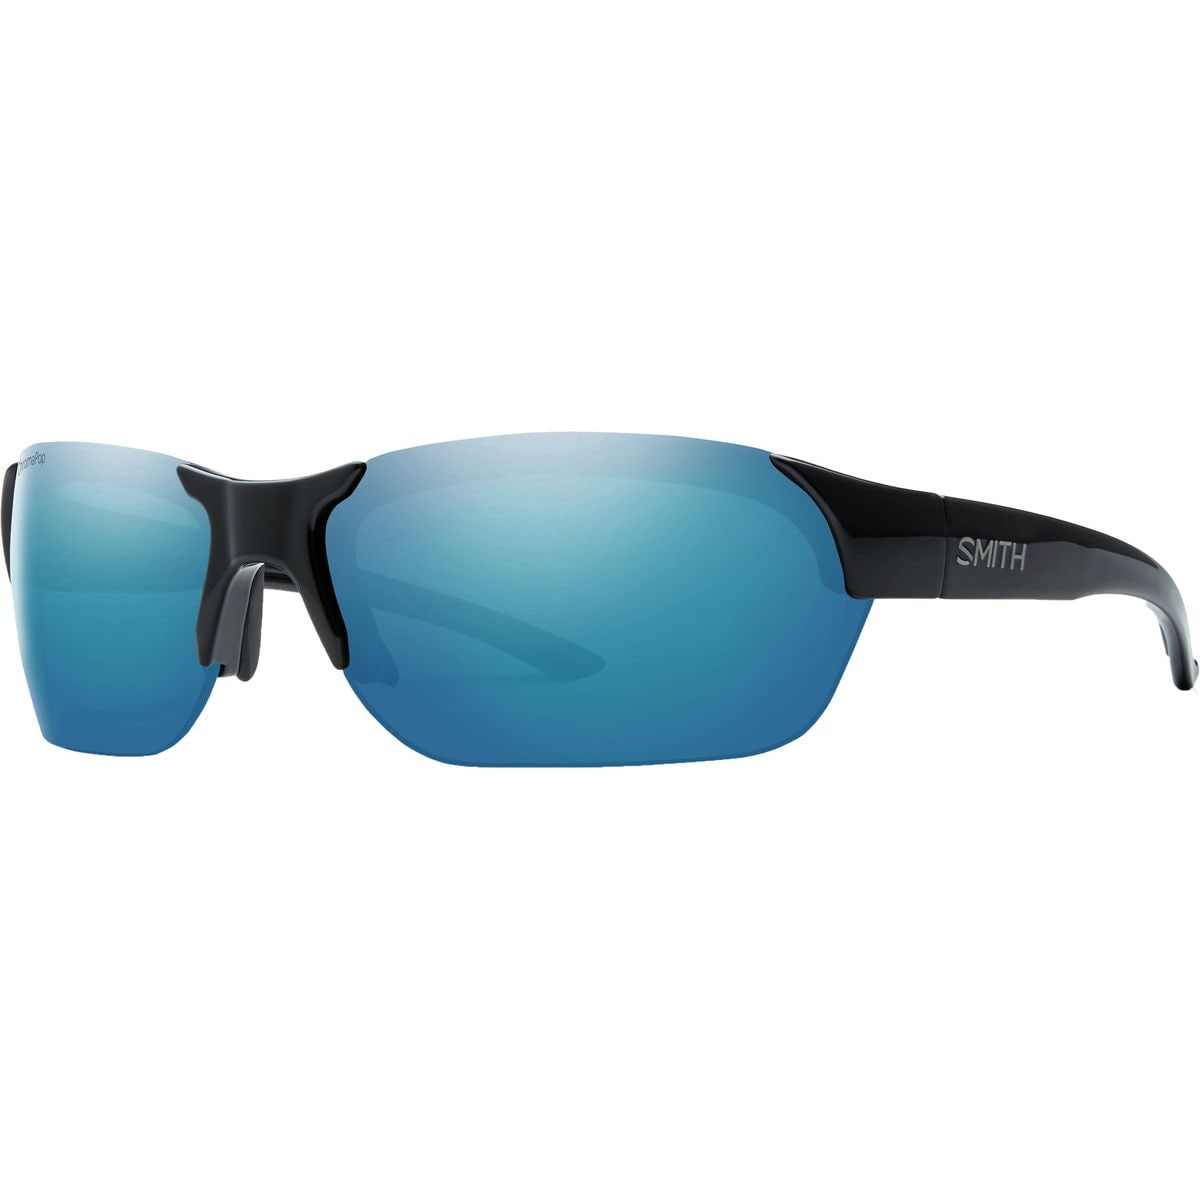 Smith Envoy ChromaPop Polarized Sunglasses - Men's